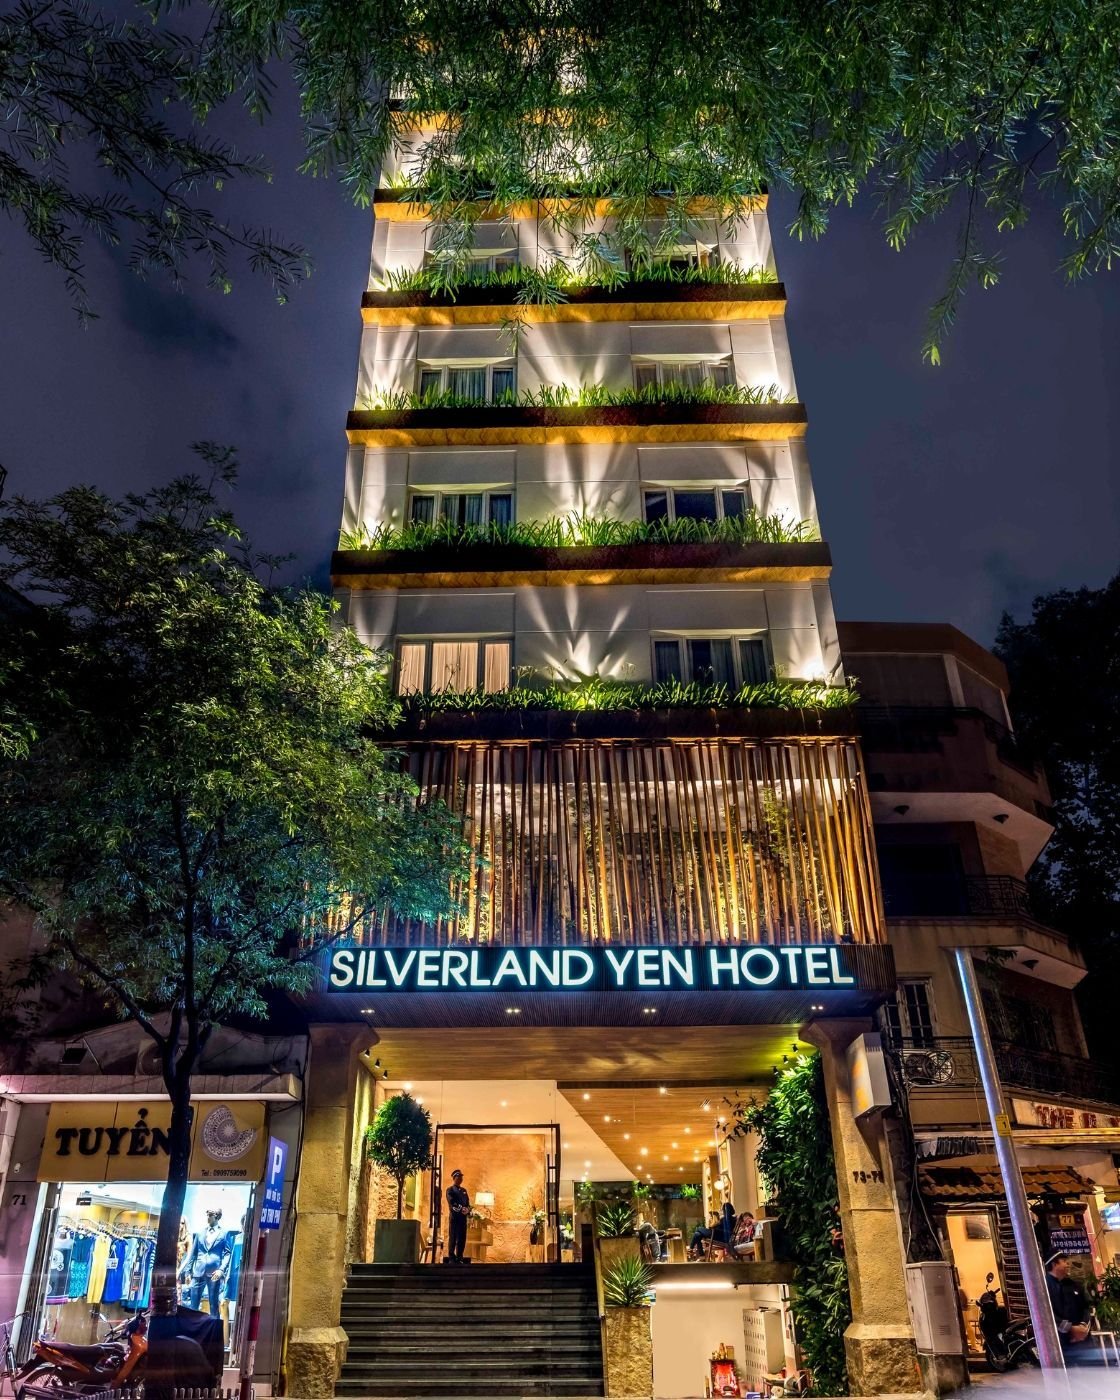 Silverland Yen 호텔